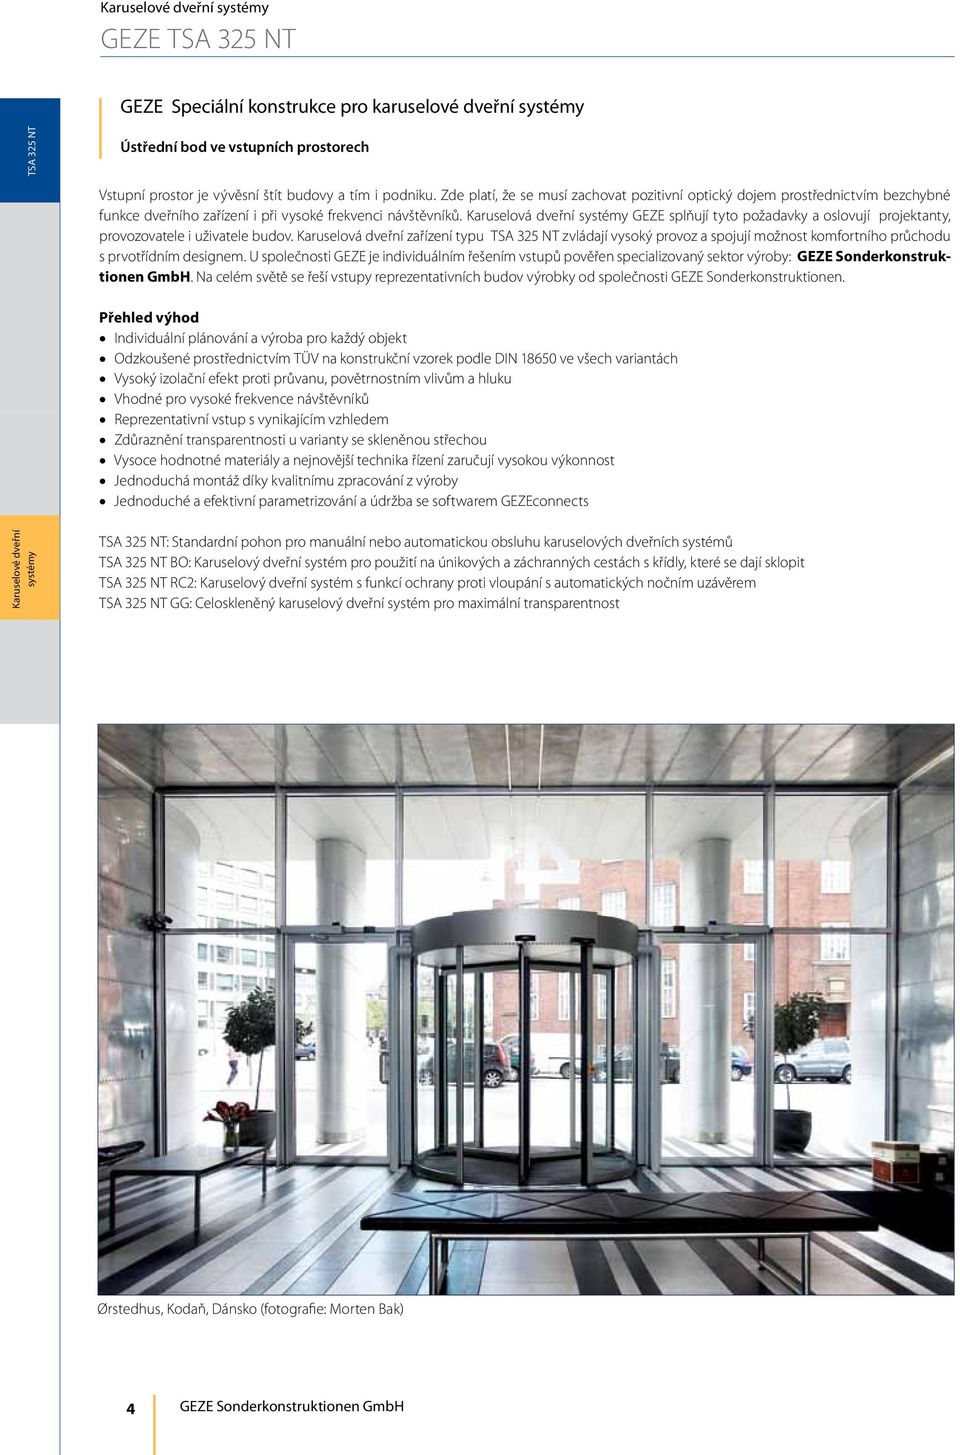 Karuselová dveřní GEZE splňují tyto požadavky a oslovují projektanty, provozovatele i uživatele budov.